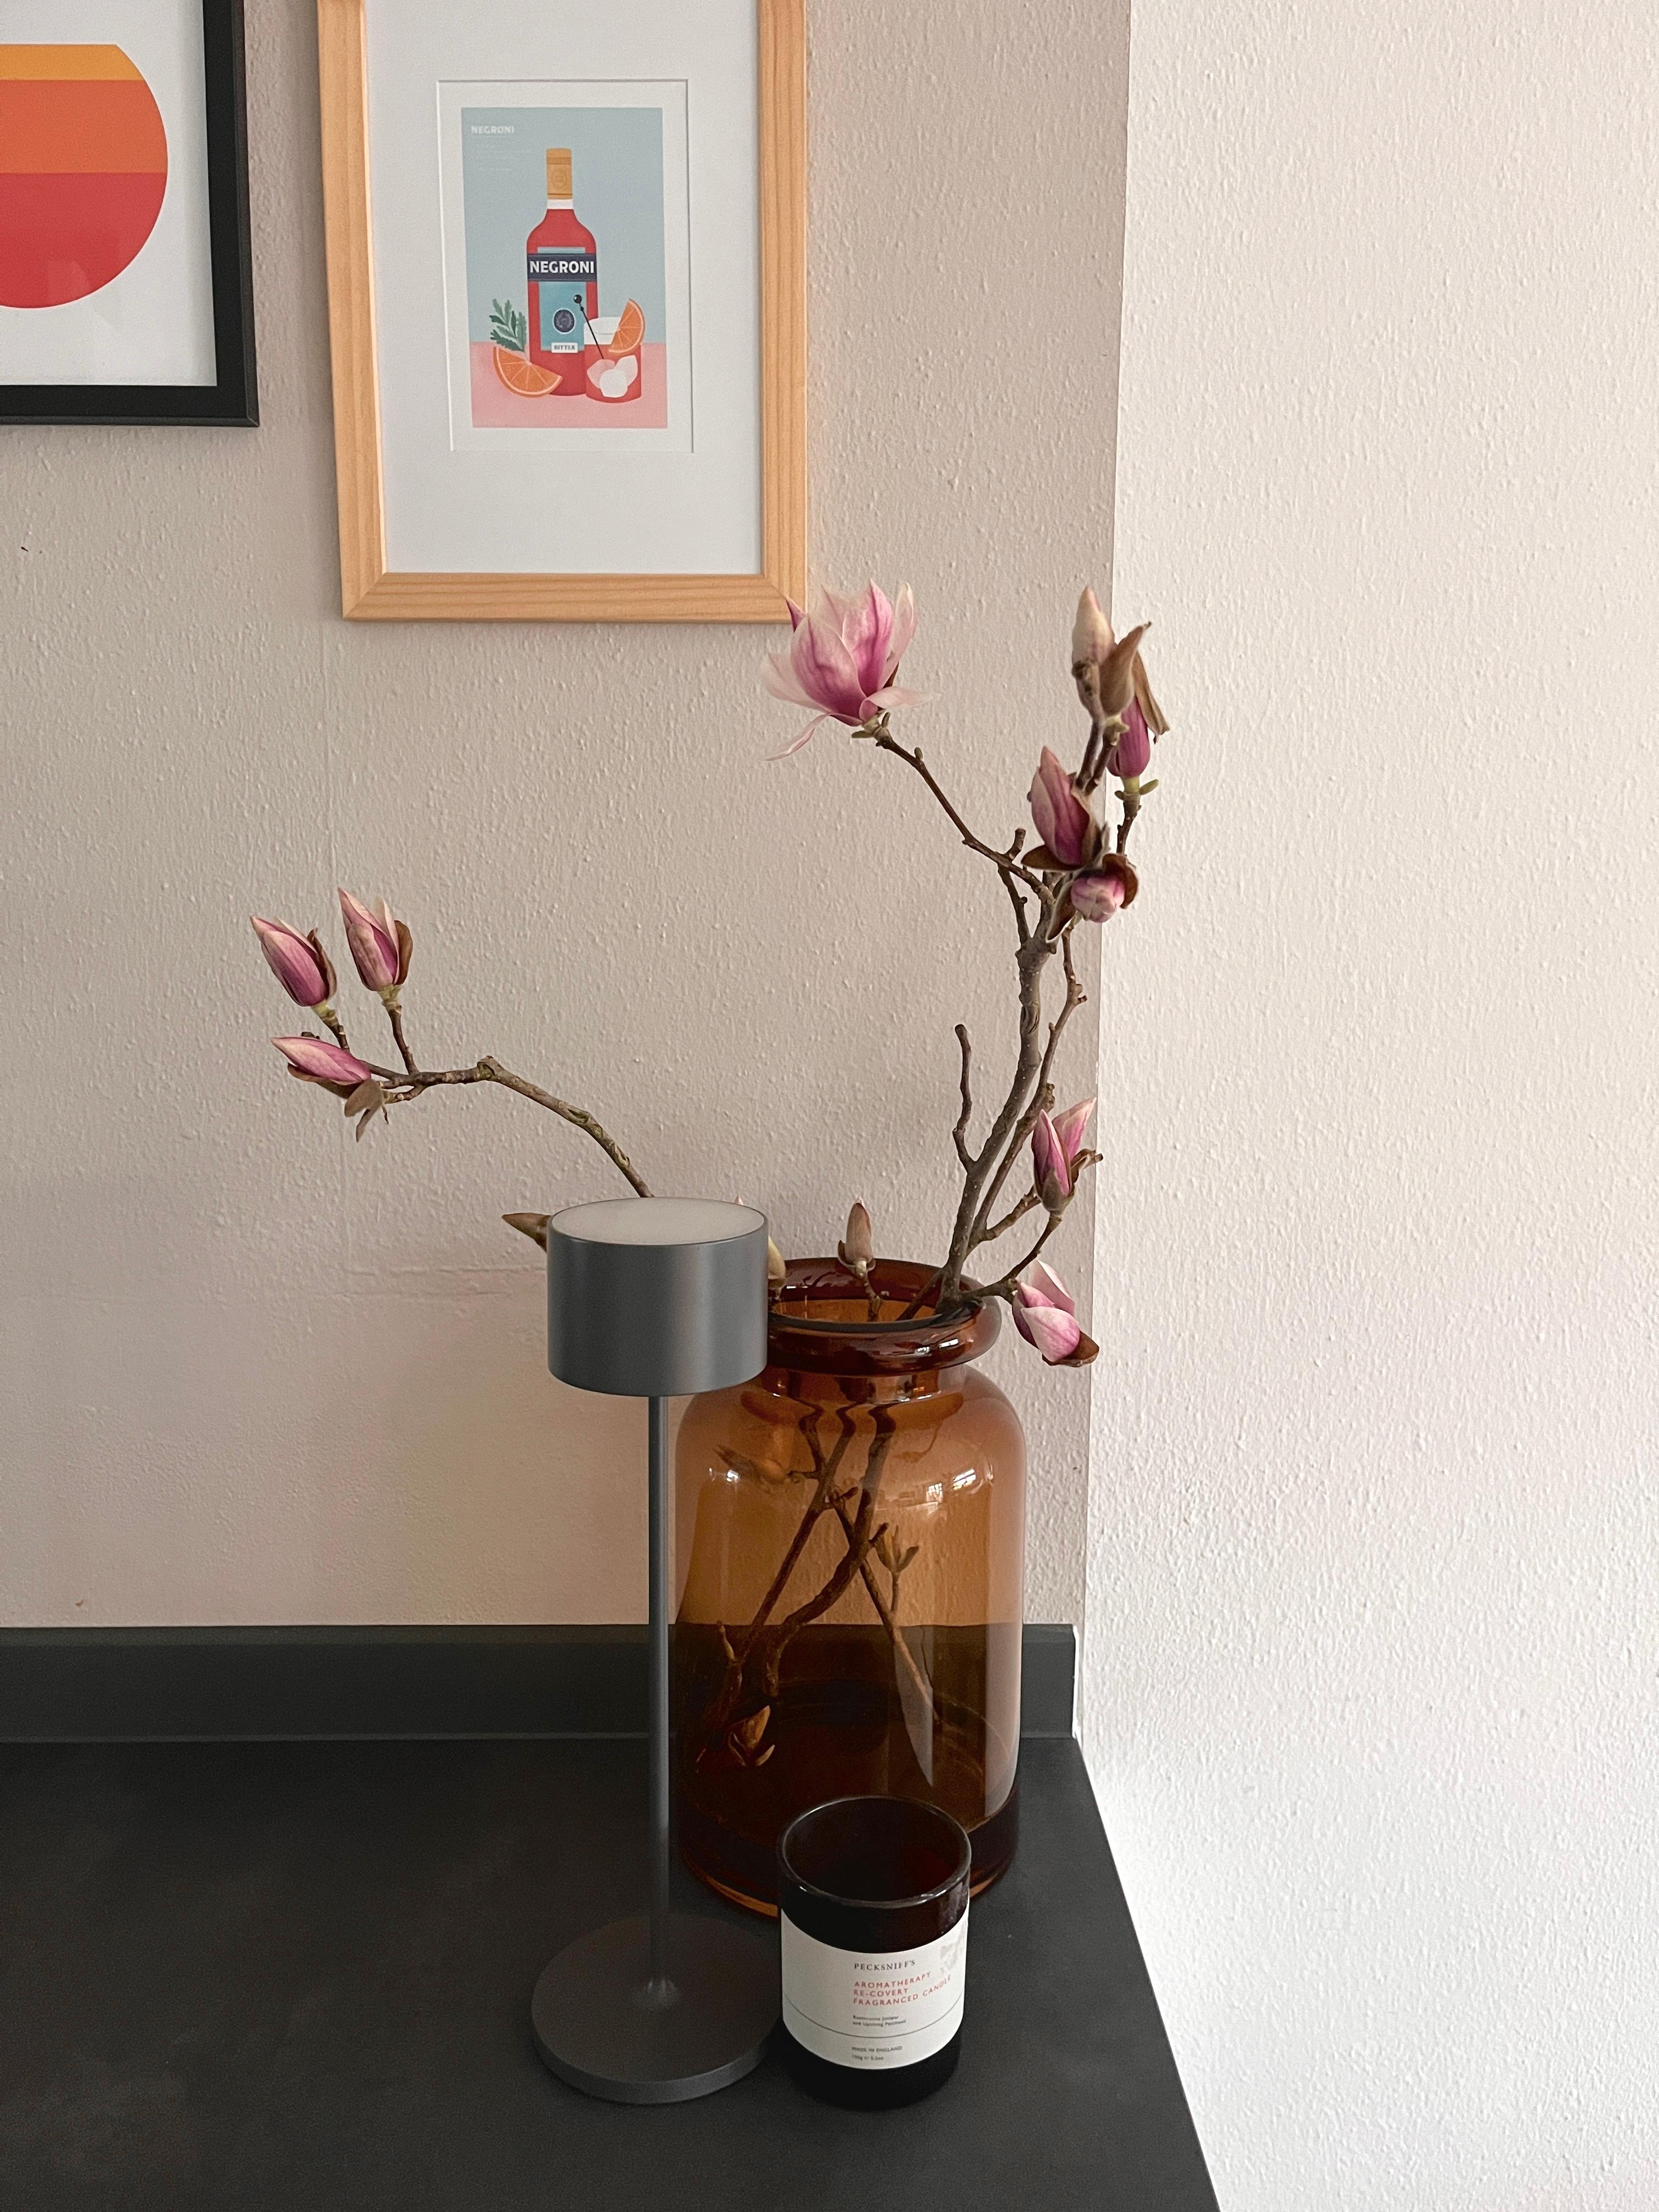 Frühling im Haus 🌸
#magnolie#küche#frühling#frühlingsdeko#magnolienzweige#küchengestaltung#kücheninsel#interiordesign